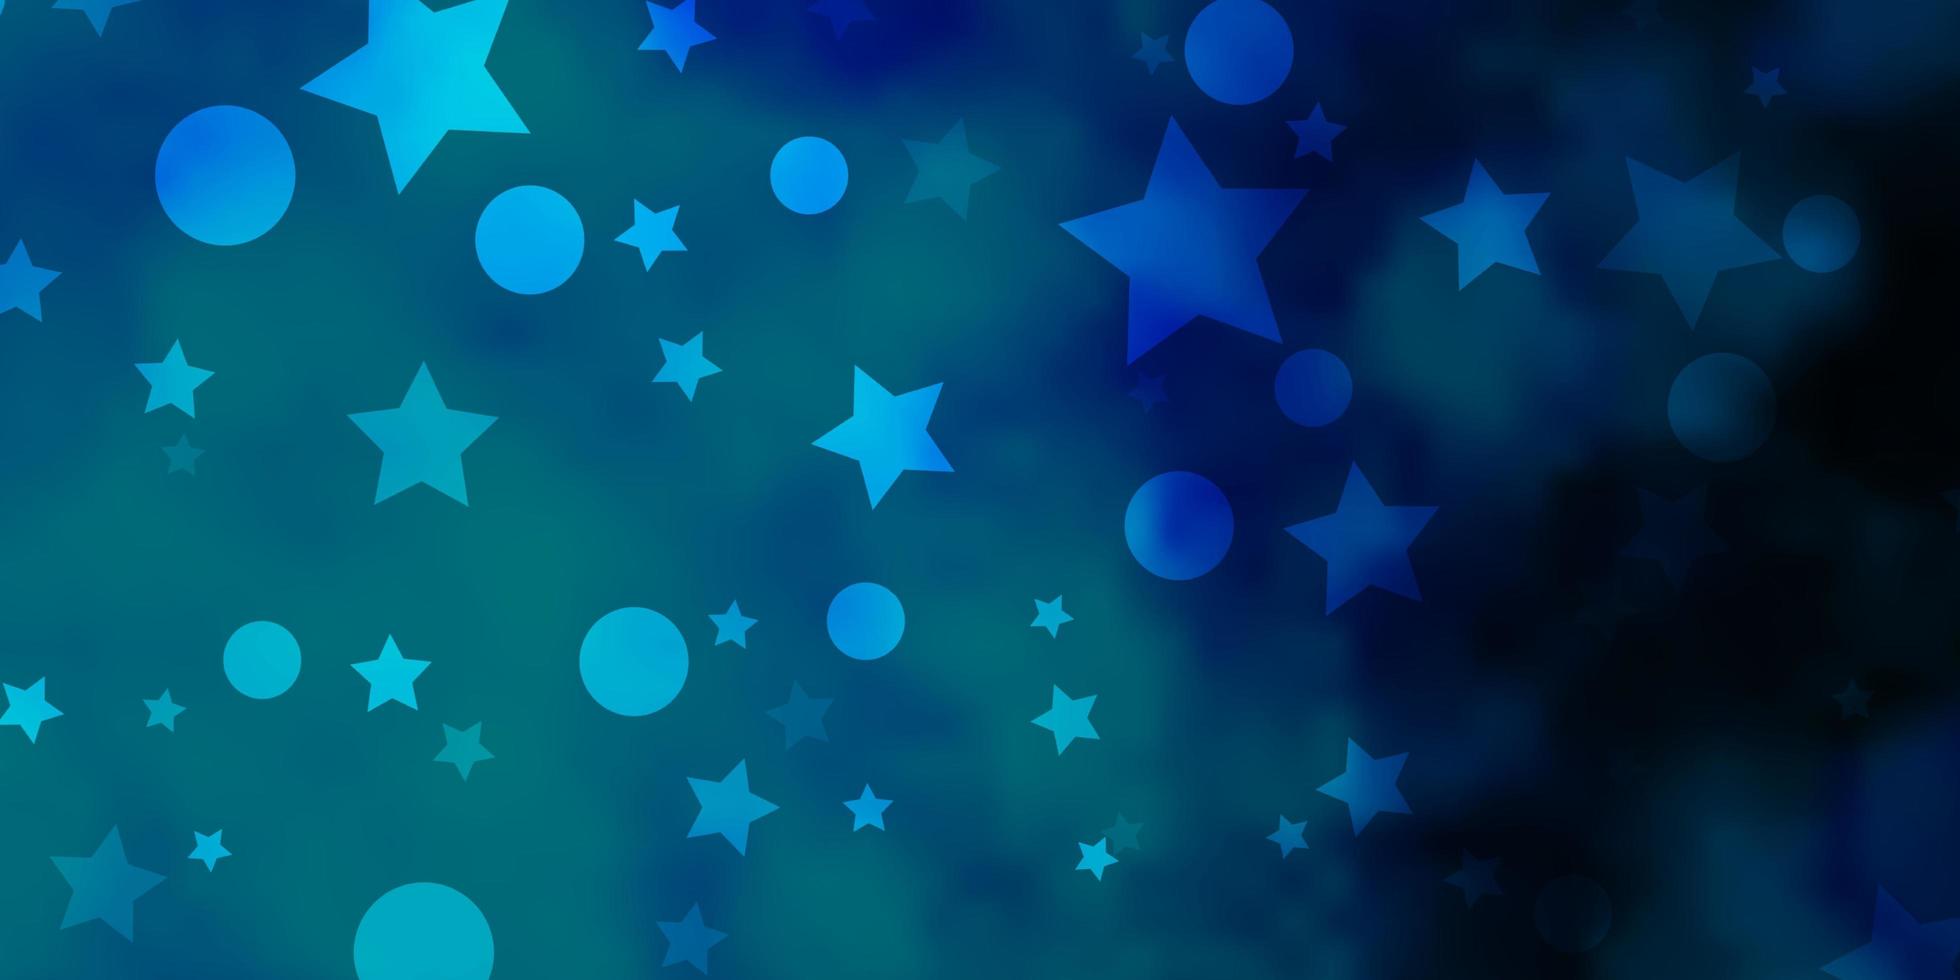 toile de fond de vecteur bleu clair avec des cercles, des étoiles. illustration avec ensemble de sphères abstraites colorées, étoiles. texture pour stores, rideaux.